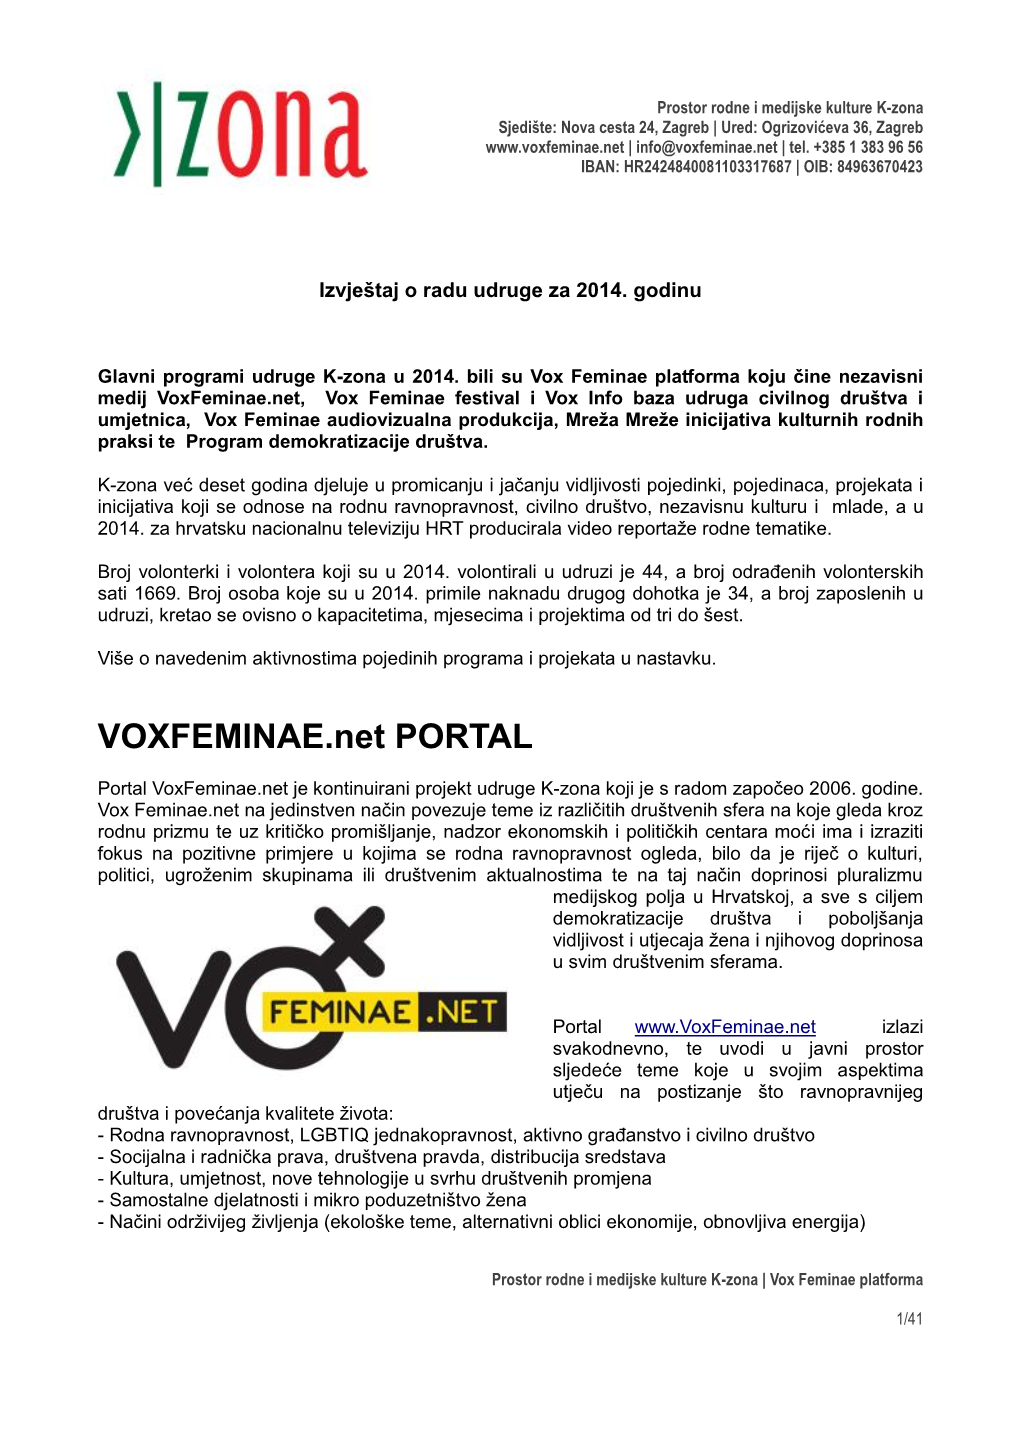 VOXFEMINAE.Net PORTAL